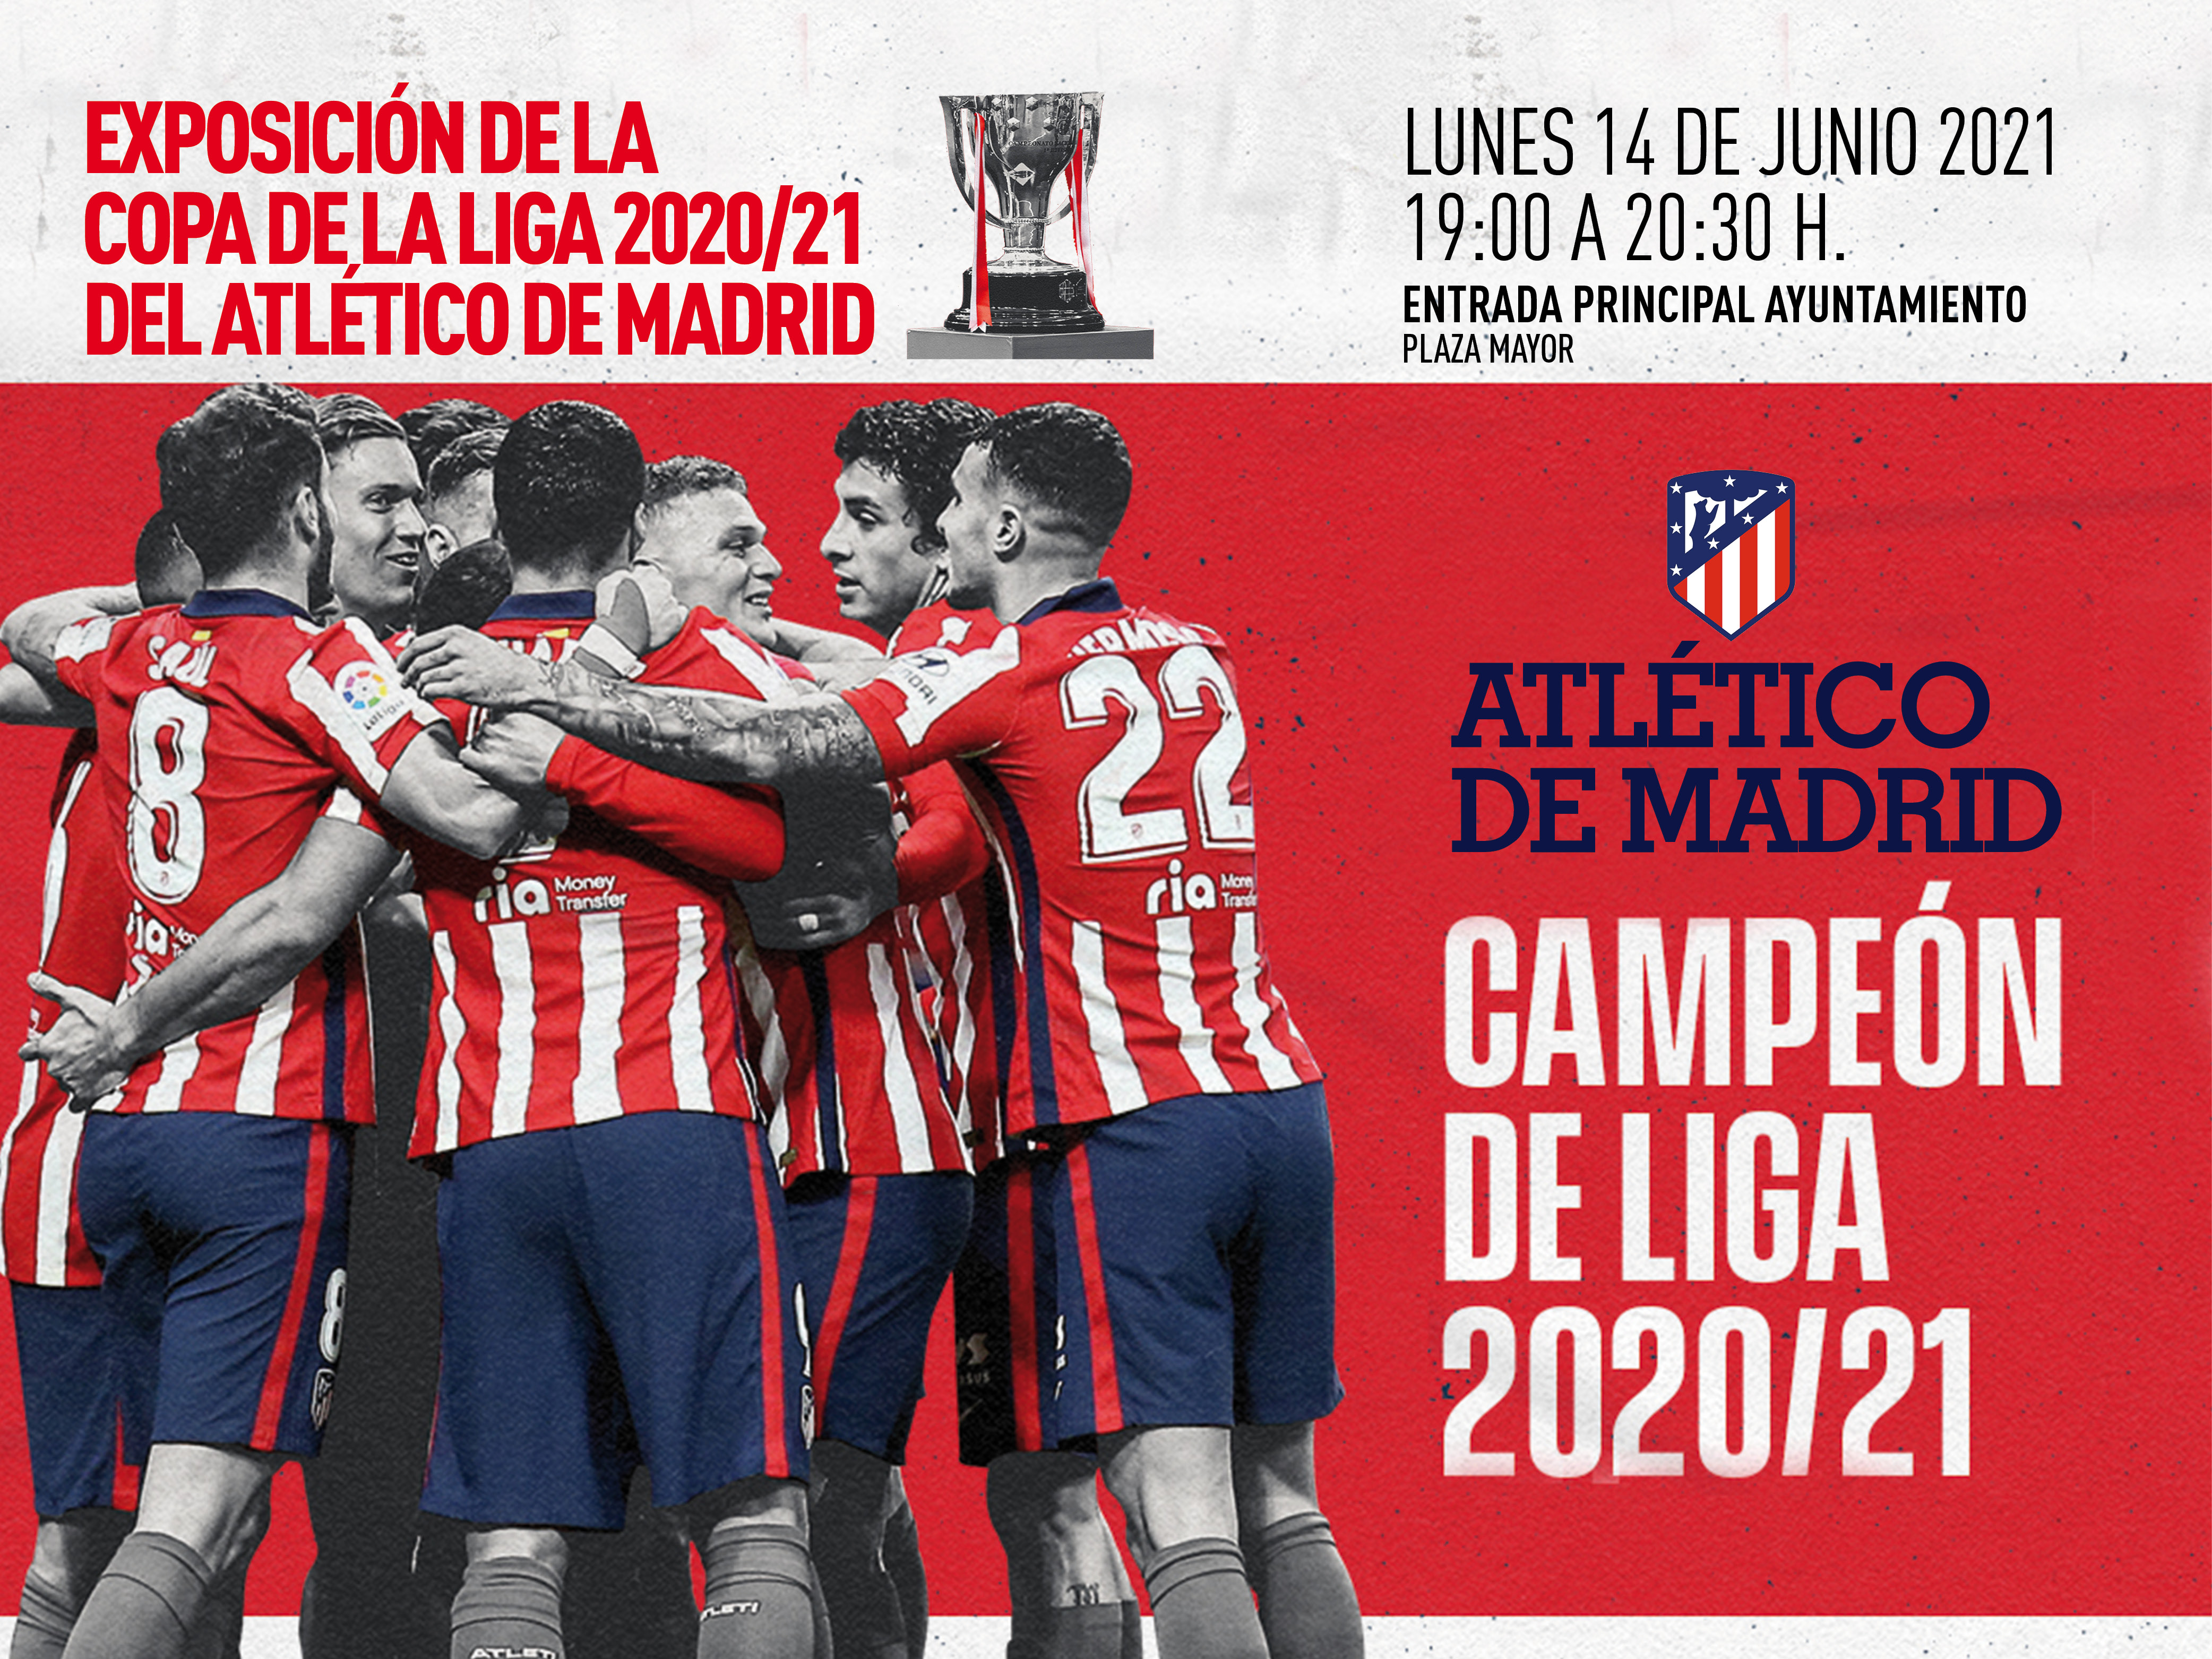 El próximo lunes 14 de junio se podrá ver la copa de la Liga 2020/2021 ganada por el Atlético de Madrid en el Ayuntamiento de Torrejón de Ardoz 